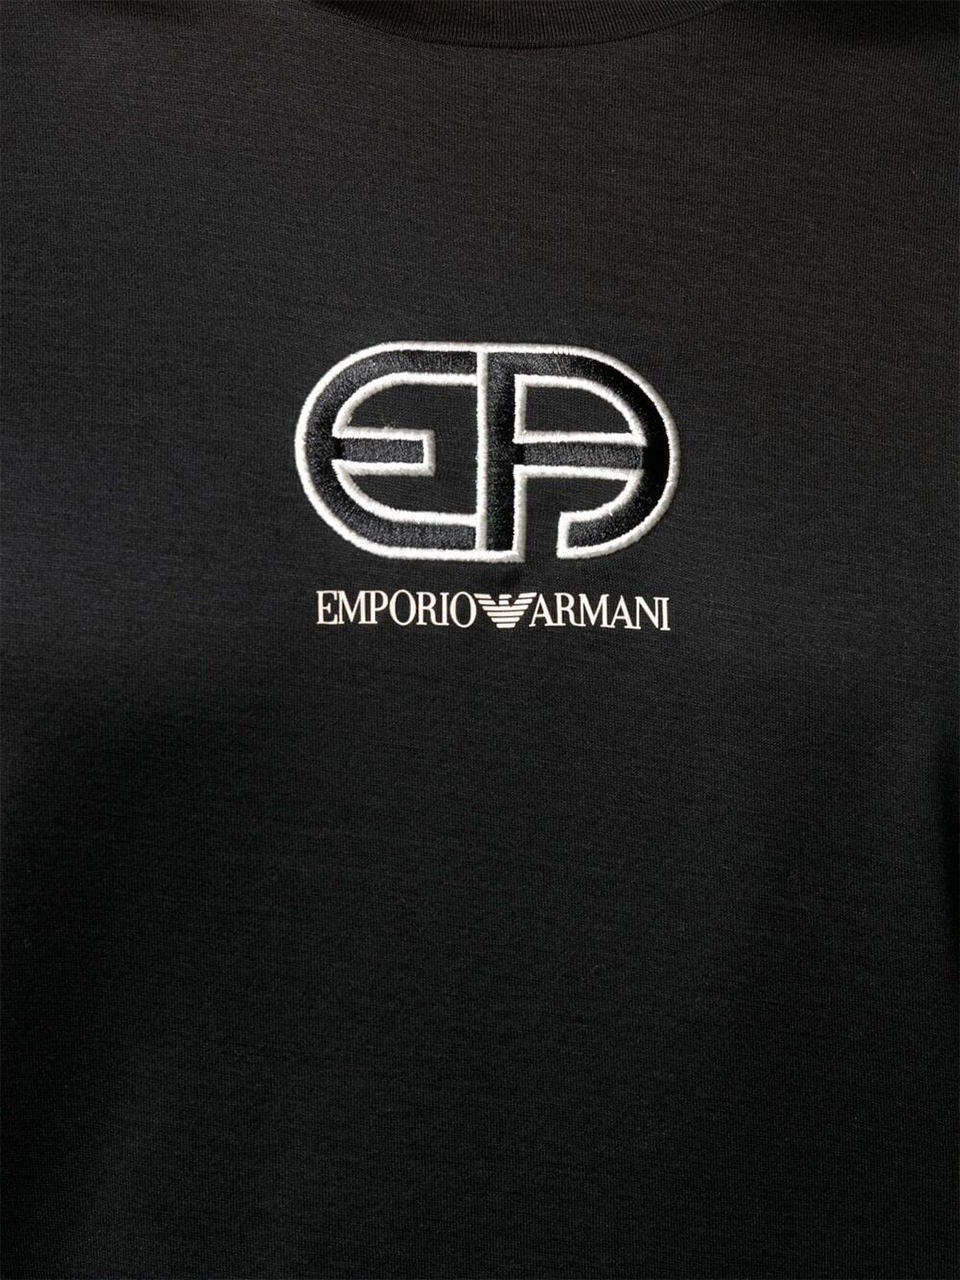 Imagem de: Camiseta Emporio Armani Preta com Logo Bordado